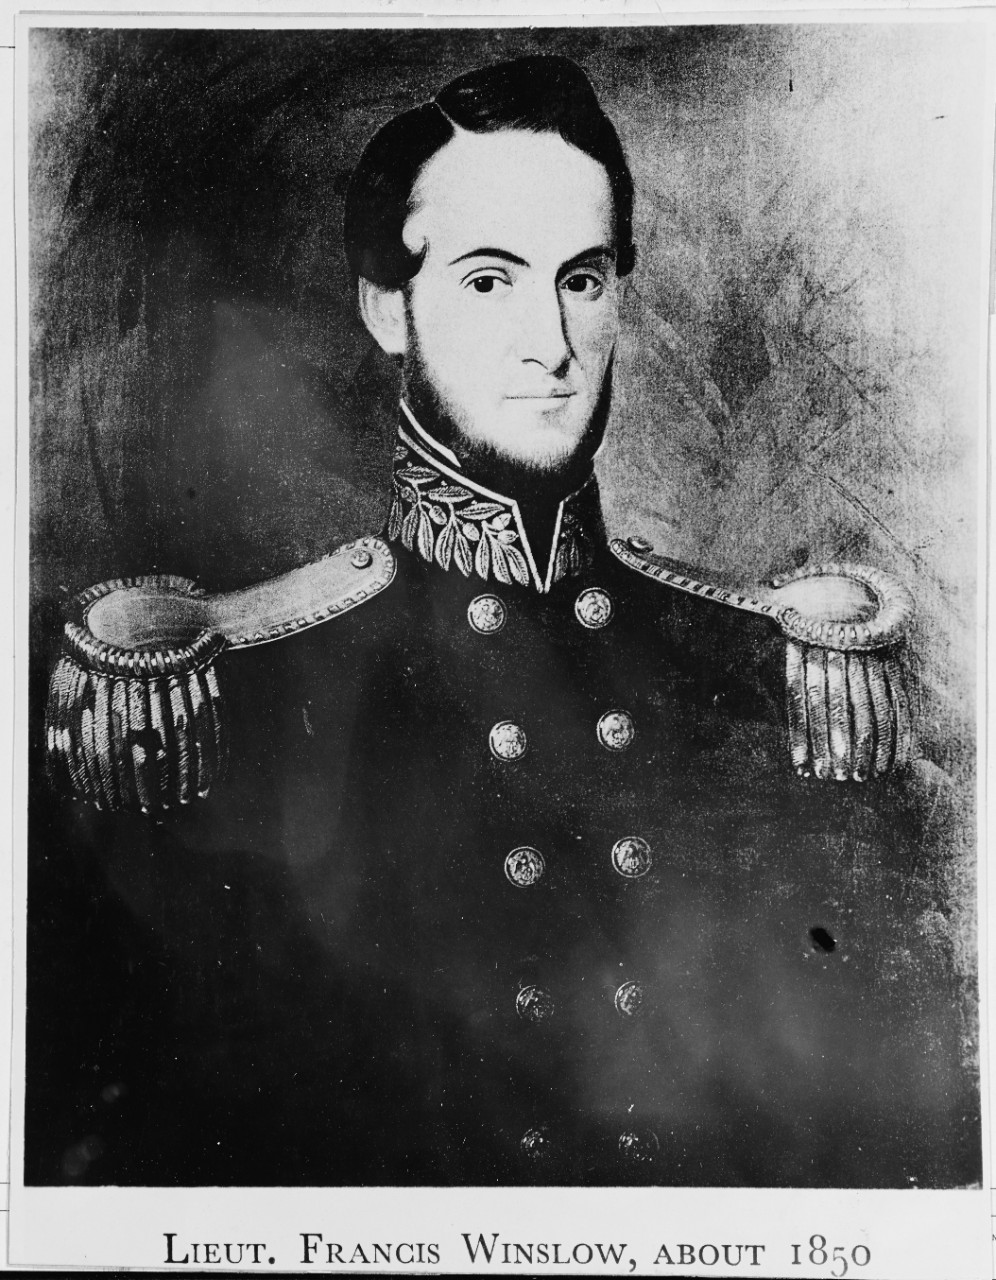 Lieutenant Francis Winslow about 1850.